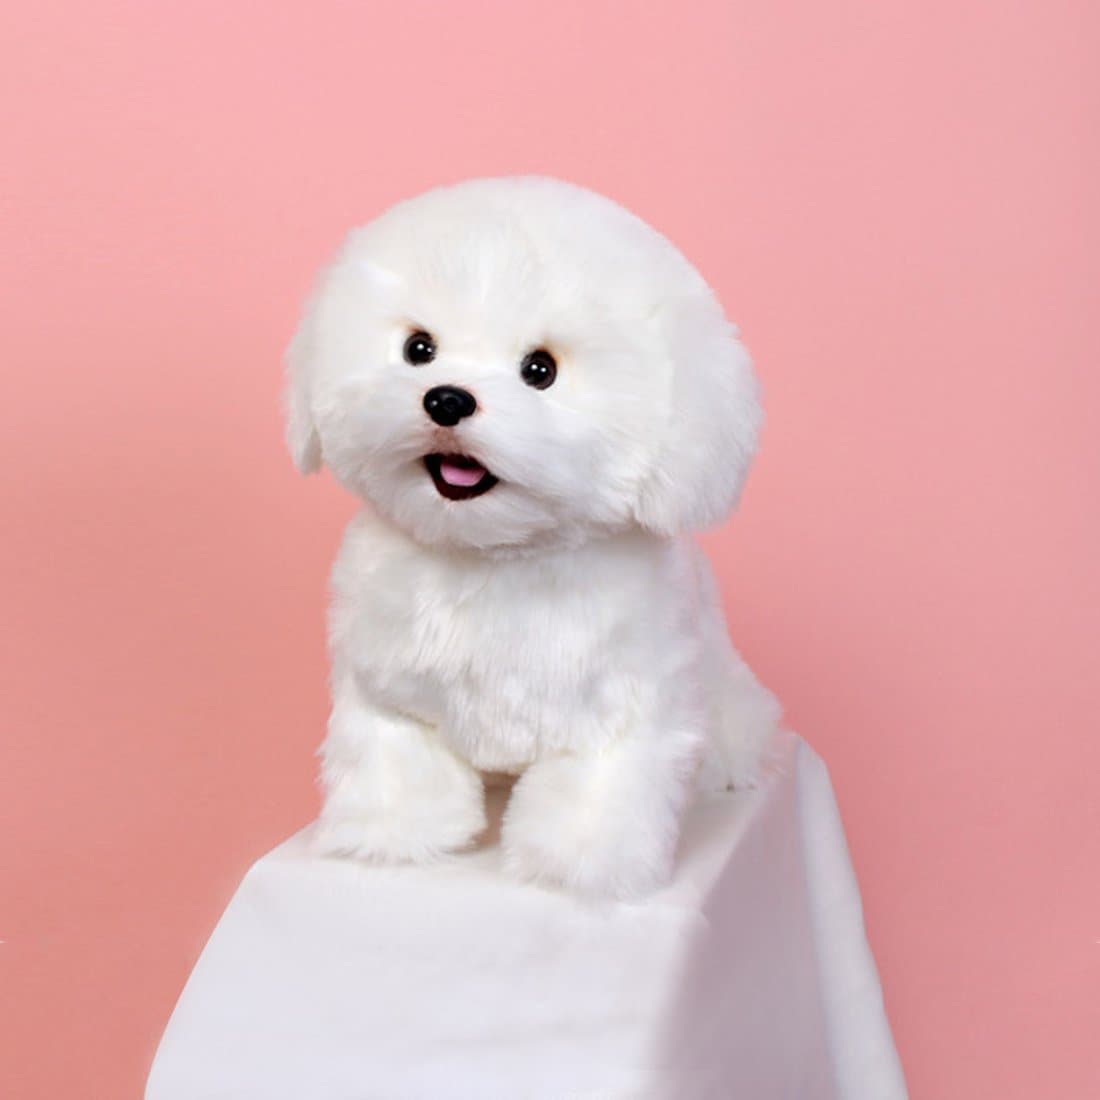 위더펫 리얼 강아지 인형 비숑 프리제, 신세계몰